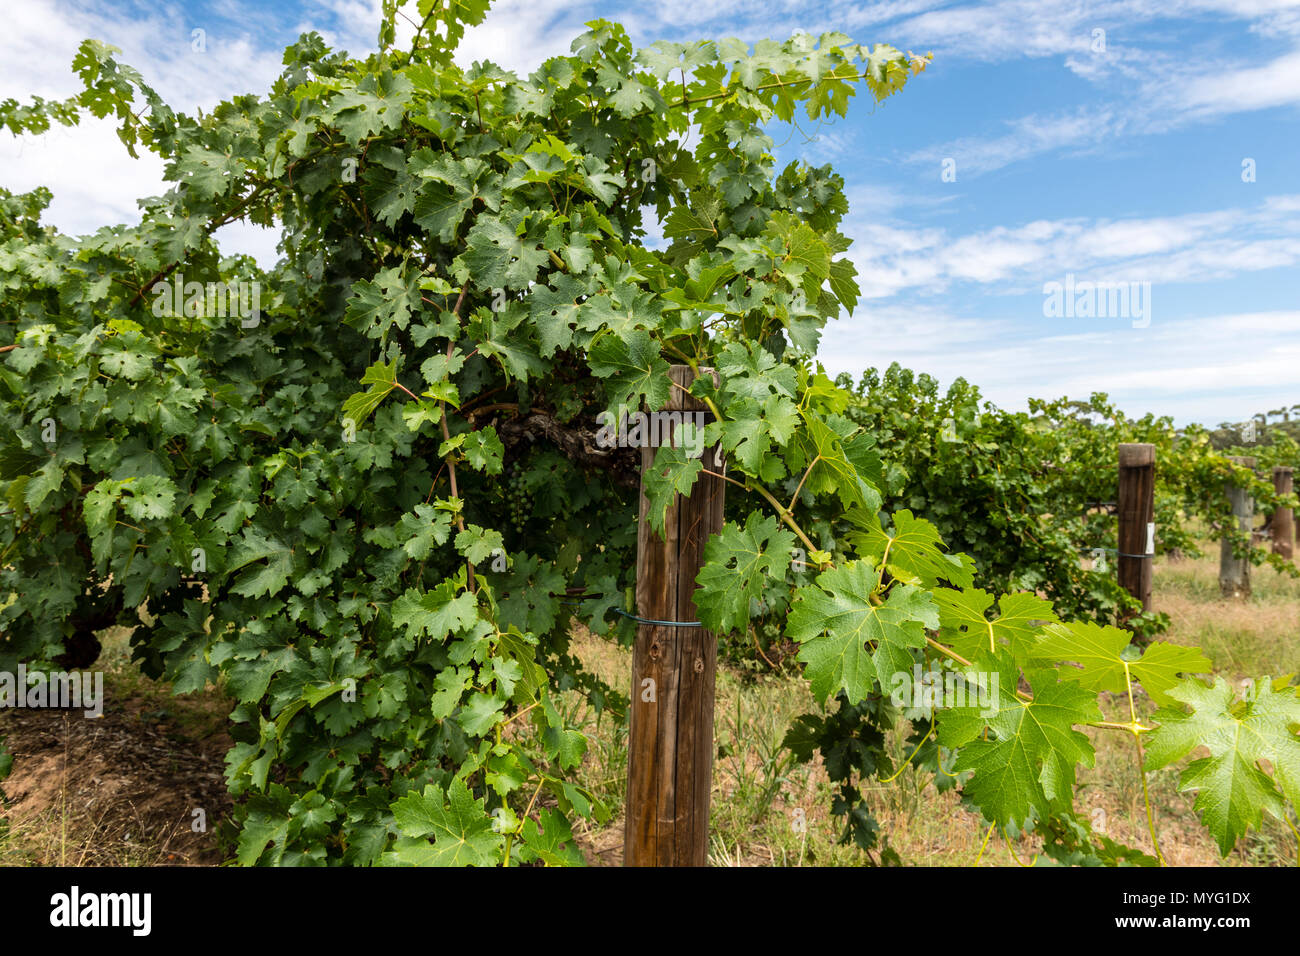 Le Cabernet Sauvignon vignes plantées dans le dix-neuvième siècle sont pensés pour être la plus ancienne vigne Cabernet Sauvignon dans le monde. Banque D'Images